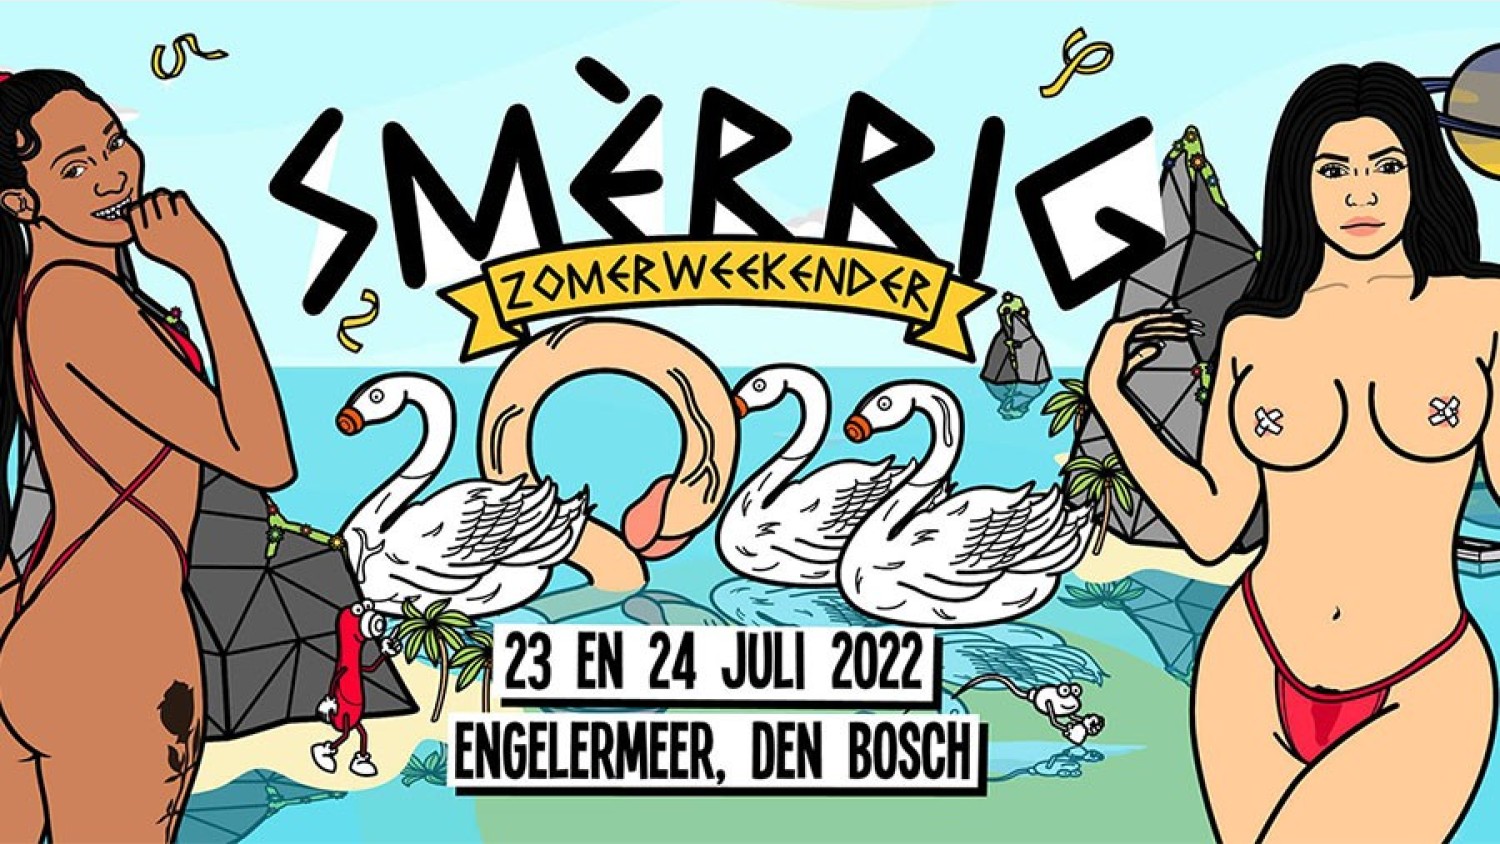 Party nieuws: SMÈRRIG Zomerweekender Festival 2021 wordt verplaatst naar 2022